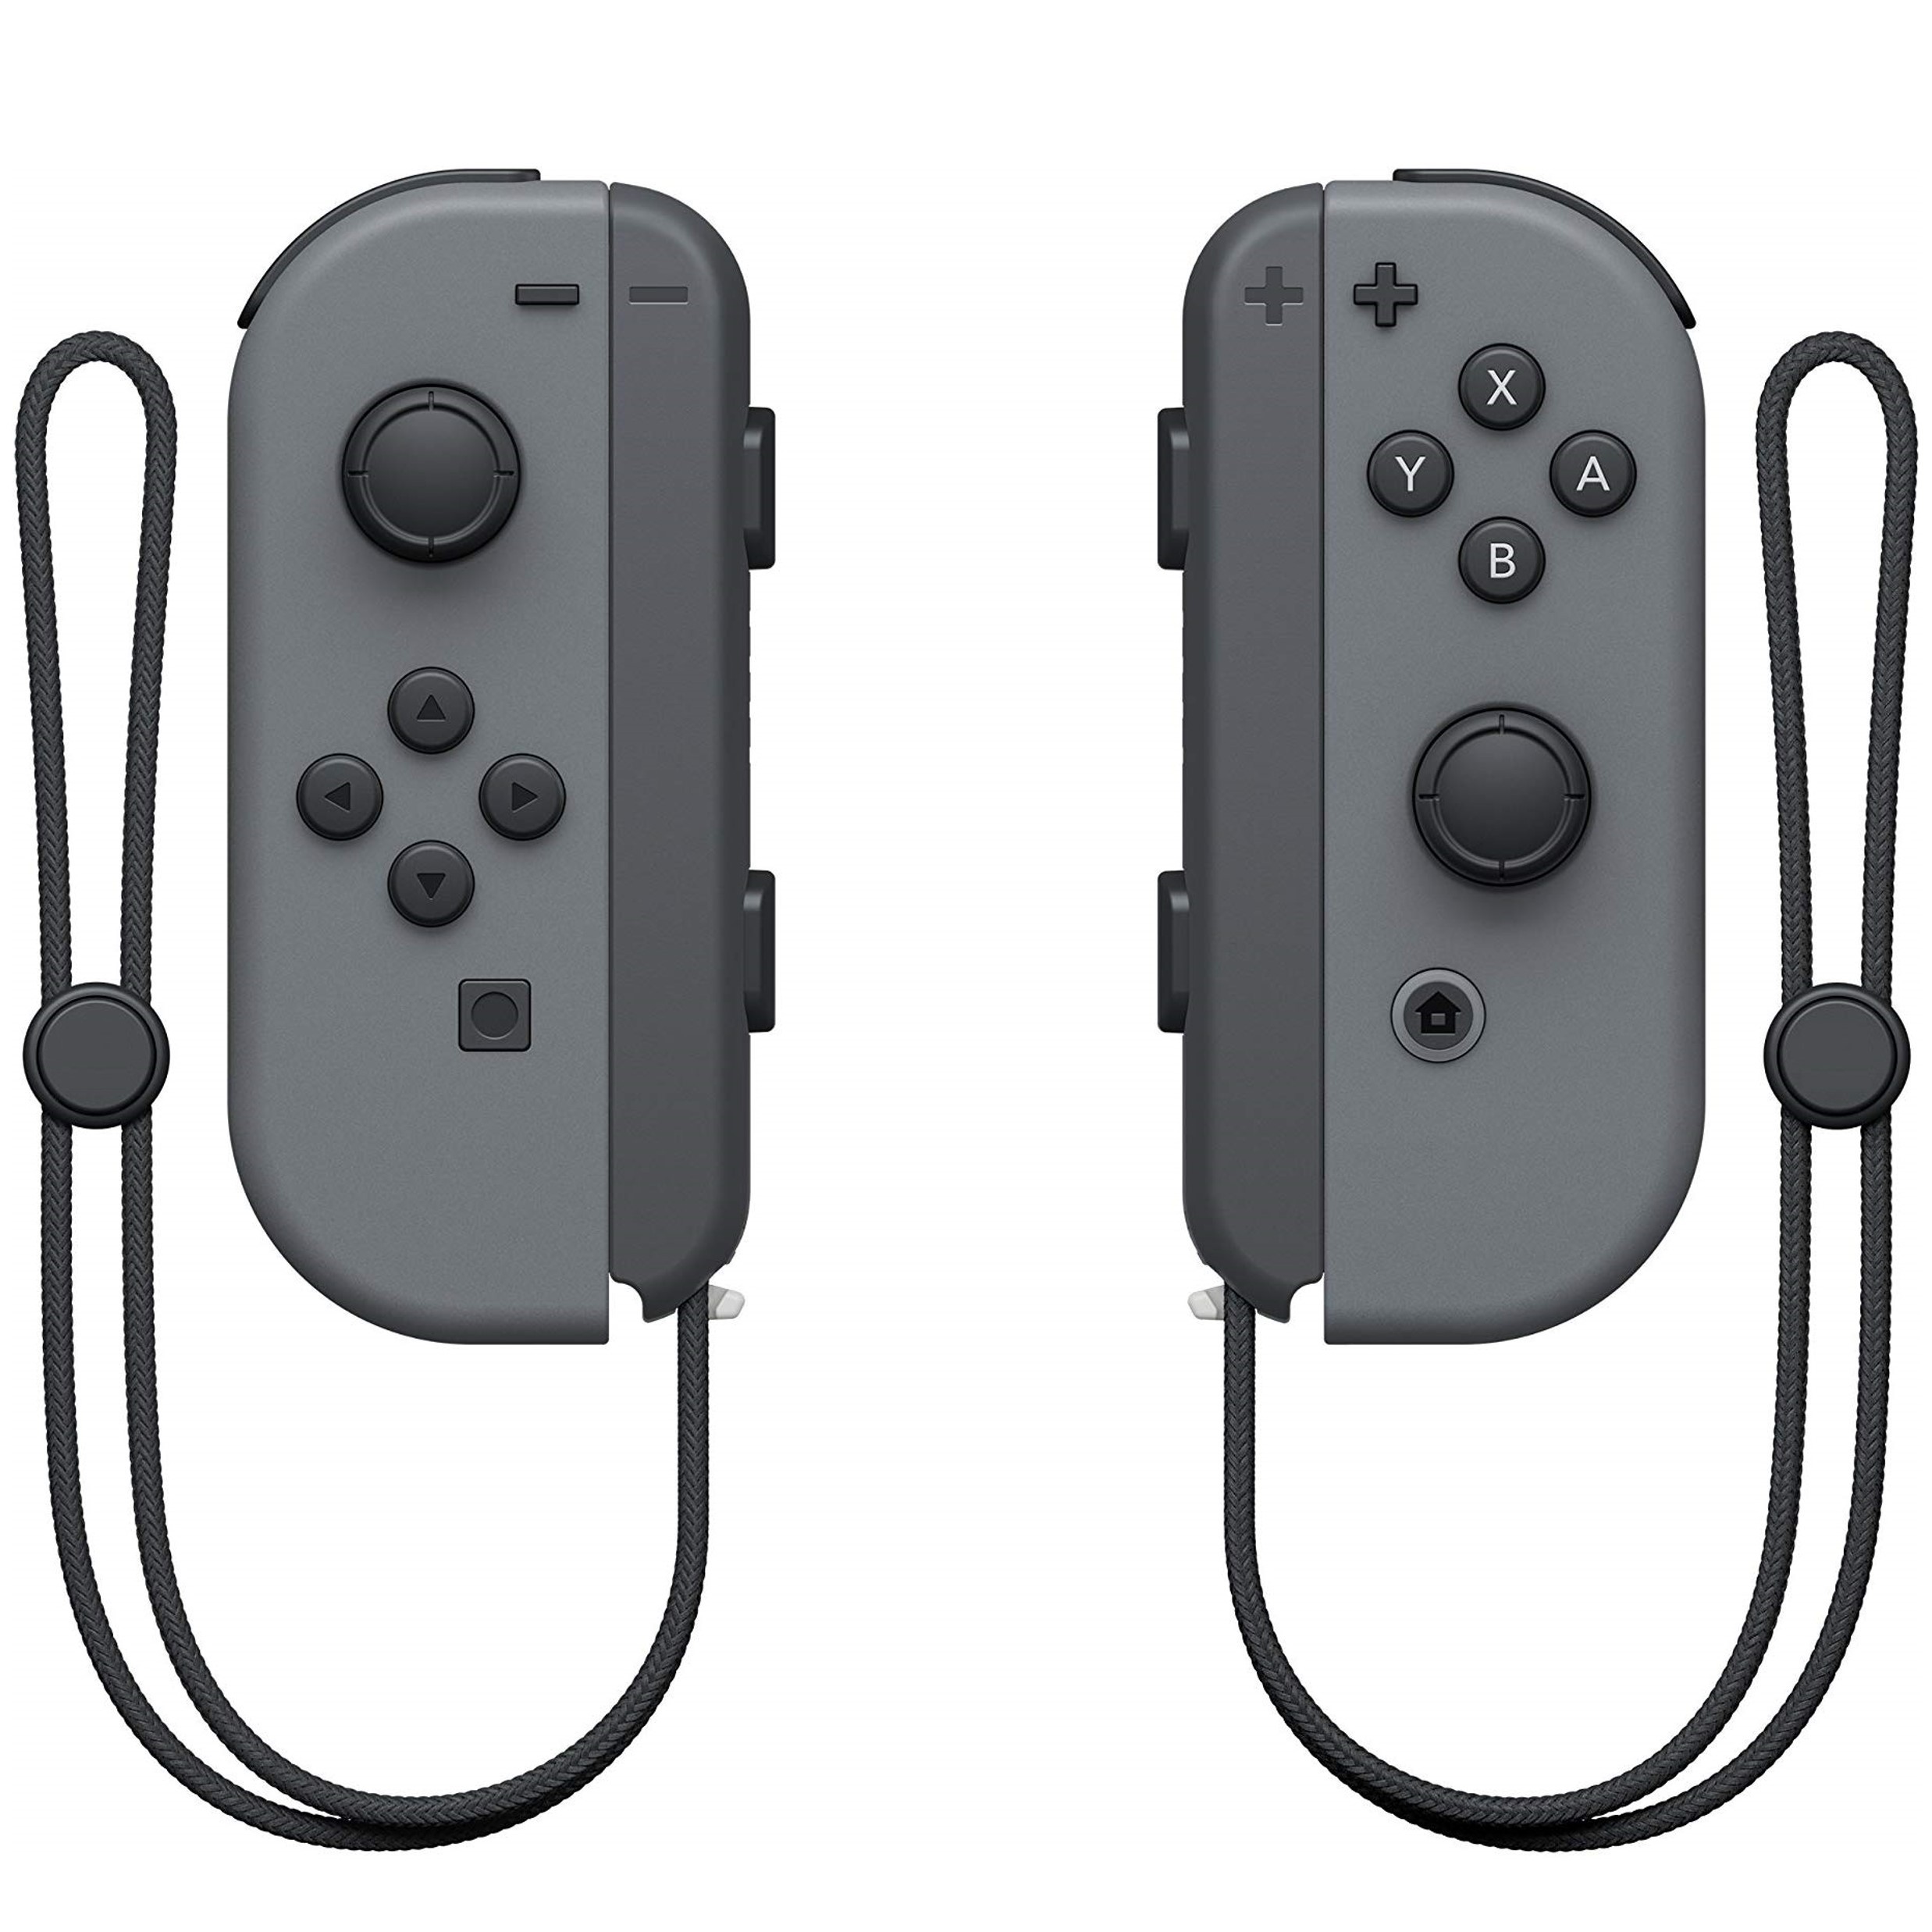 Nieuwe Wireless Controllers (L & R) voor Nintendo Switch - Grijs Kopen | Nintendo Switch Hardware